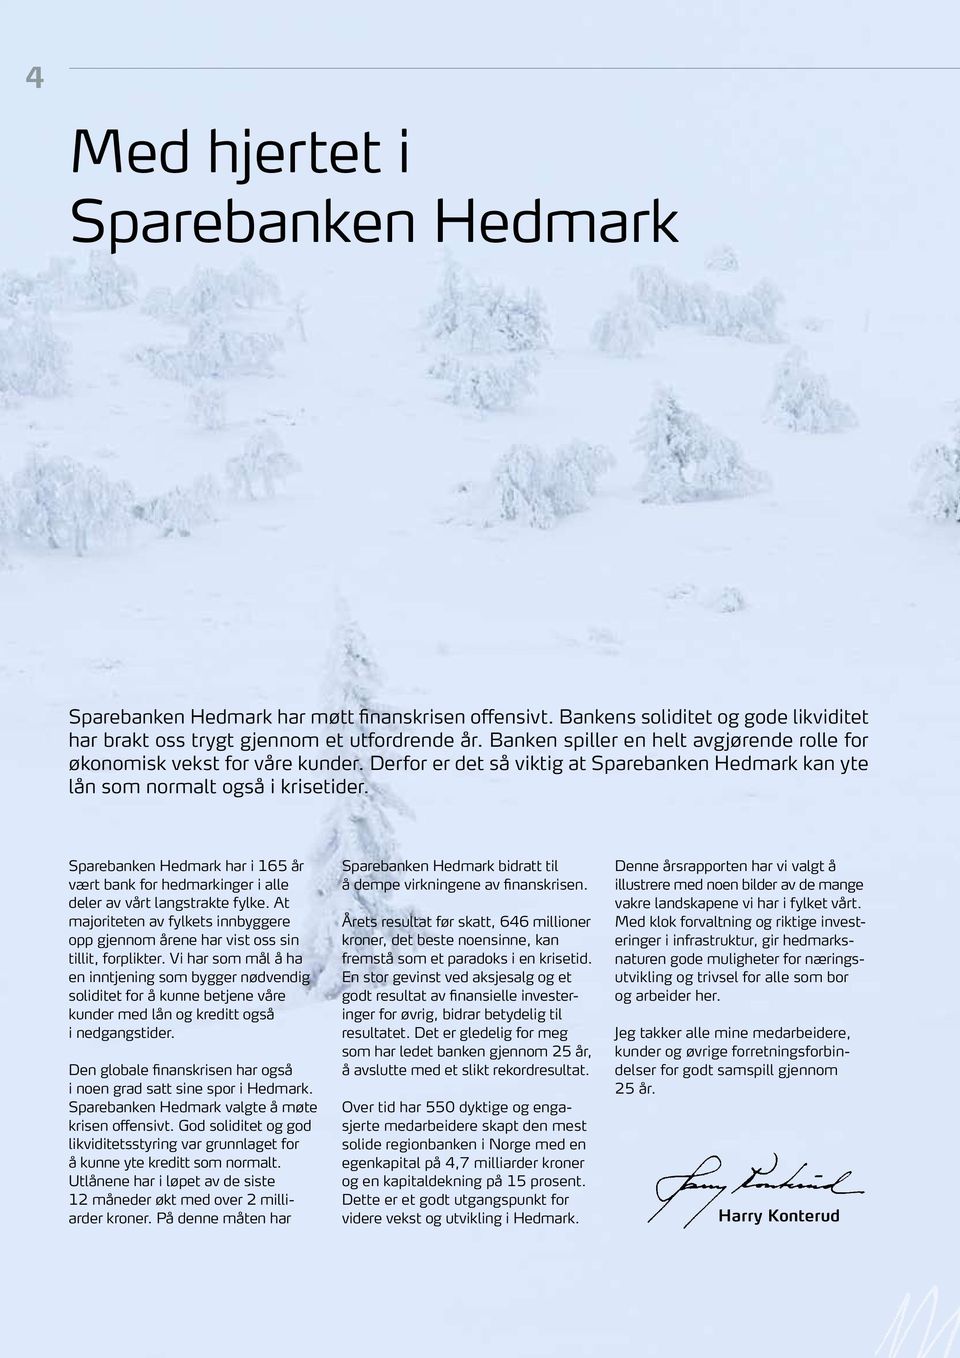 Sparebanken Hedmark har i 165 år vært bank for hedmarkinger i alle deler av vårt langstrakte fylke. At majoriteten av fylkets innbyggere opp gjennom årene har vist oss sin tillit, forplikter.